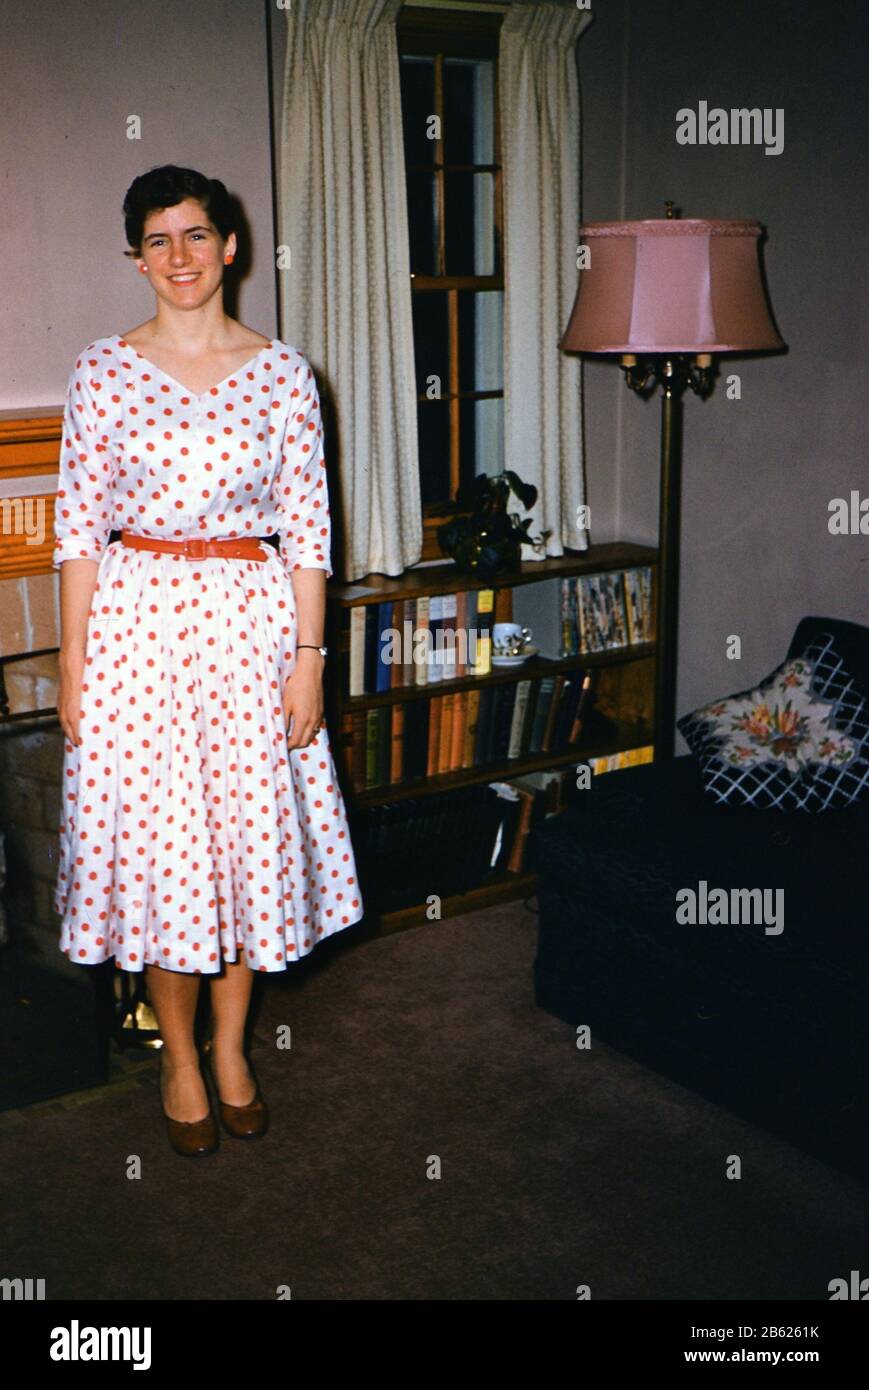 Mujer joven con un rojo y blanco vestido ca. Fotografía de -